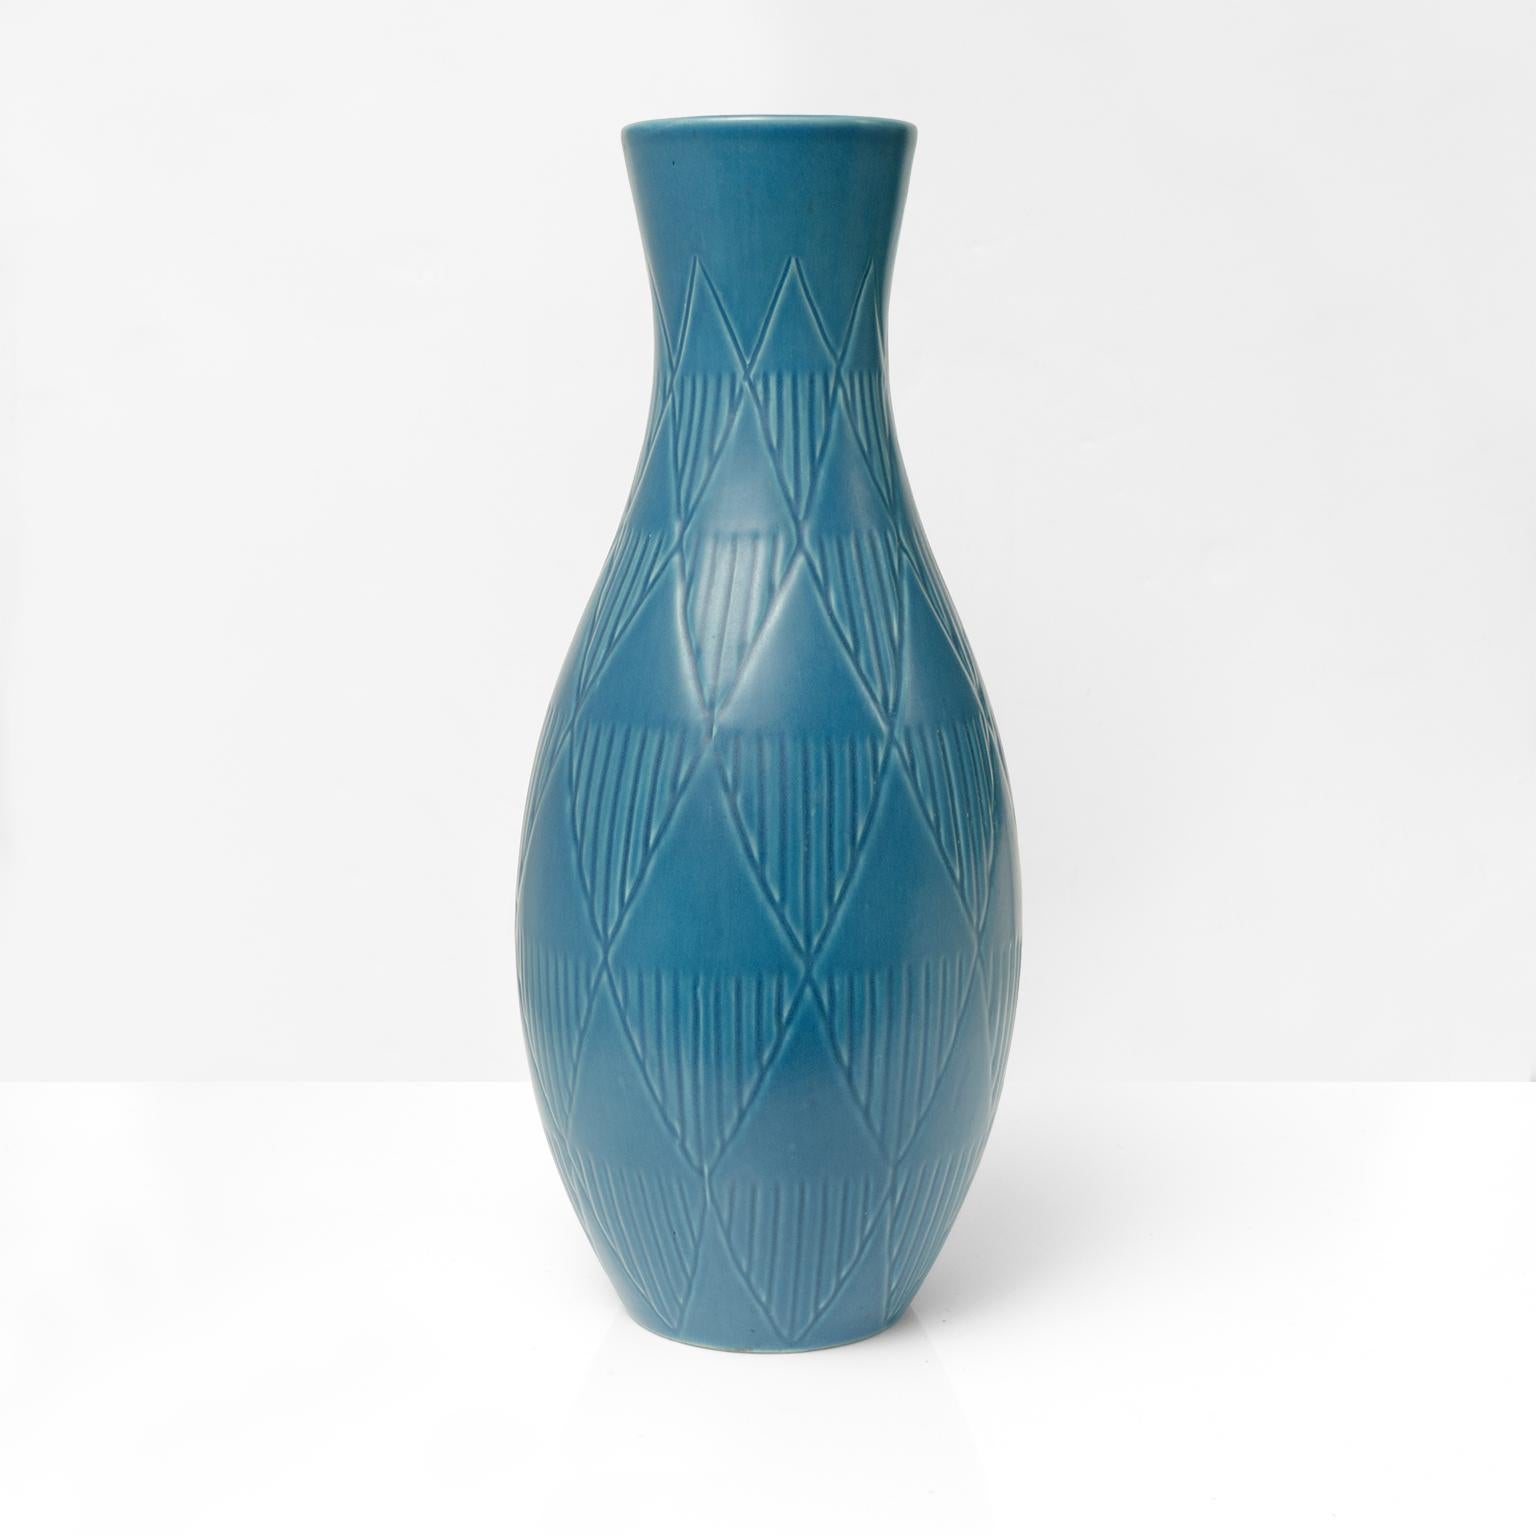 Bo Fajans blaue bauchige Keramikvase mit geometrischem Muster im Relief. Produziert von Bo Fajans, Schweden, ca. Ende der 1940er Jahre

Höhe: 18,5